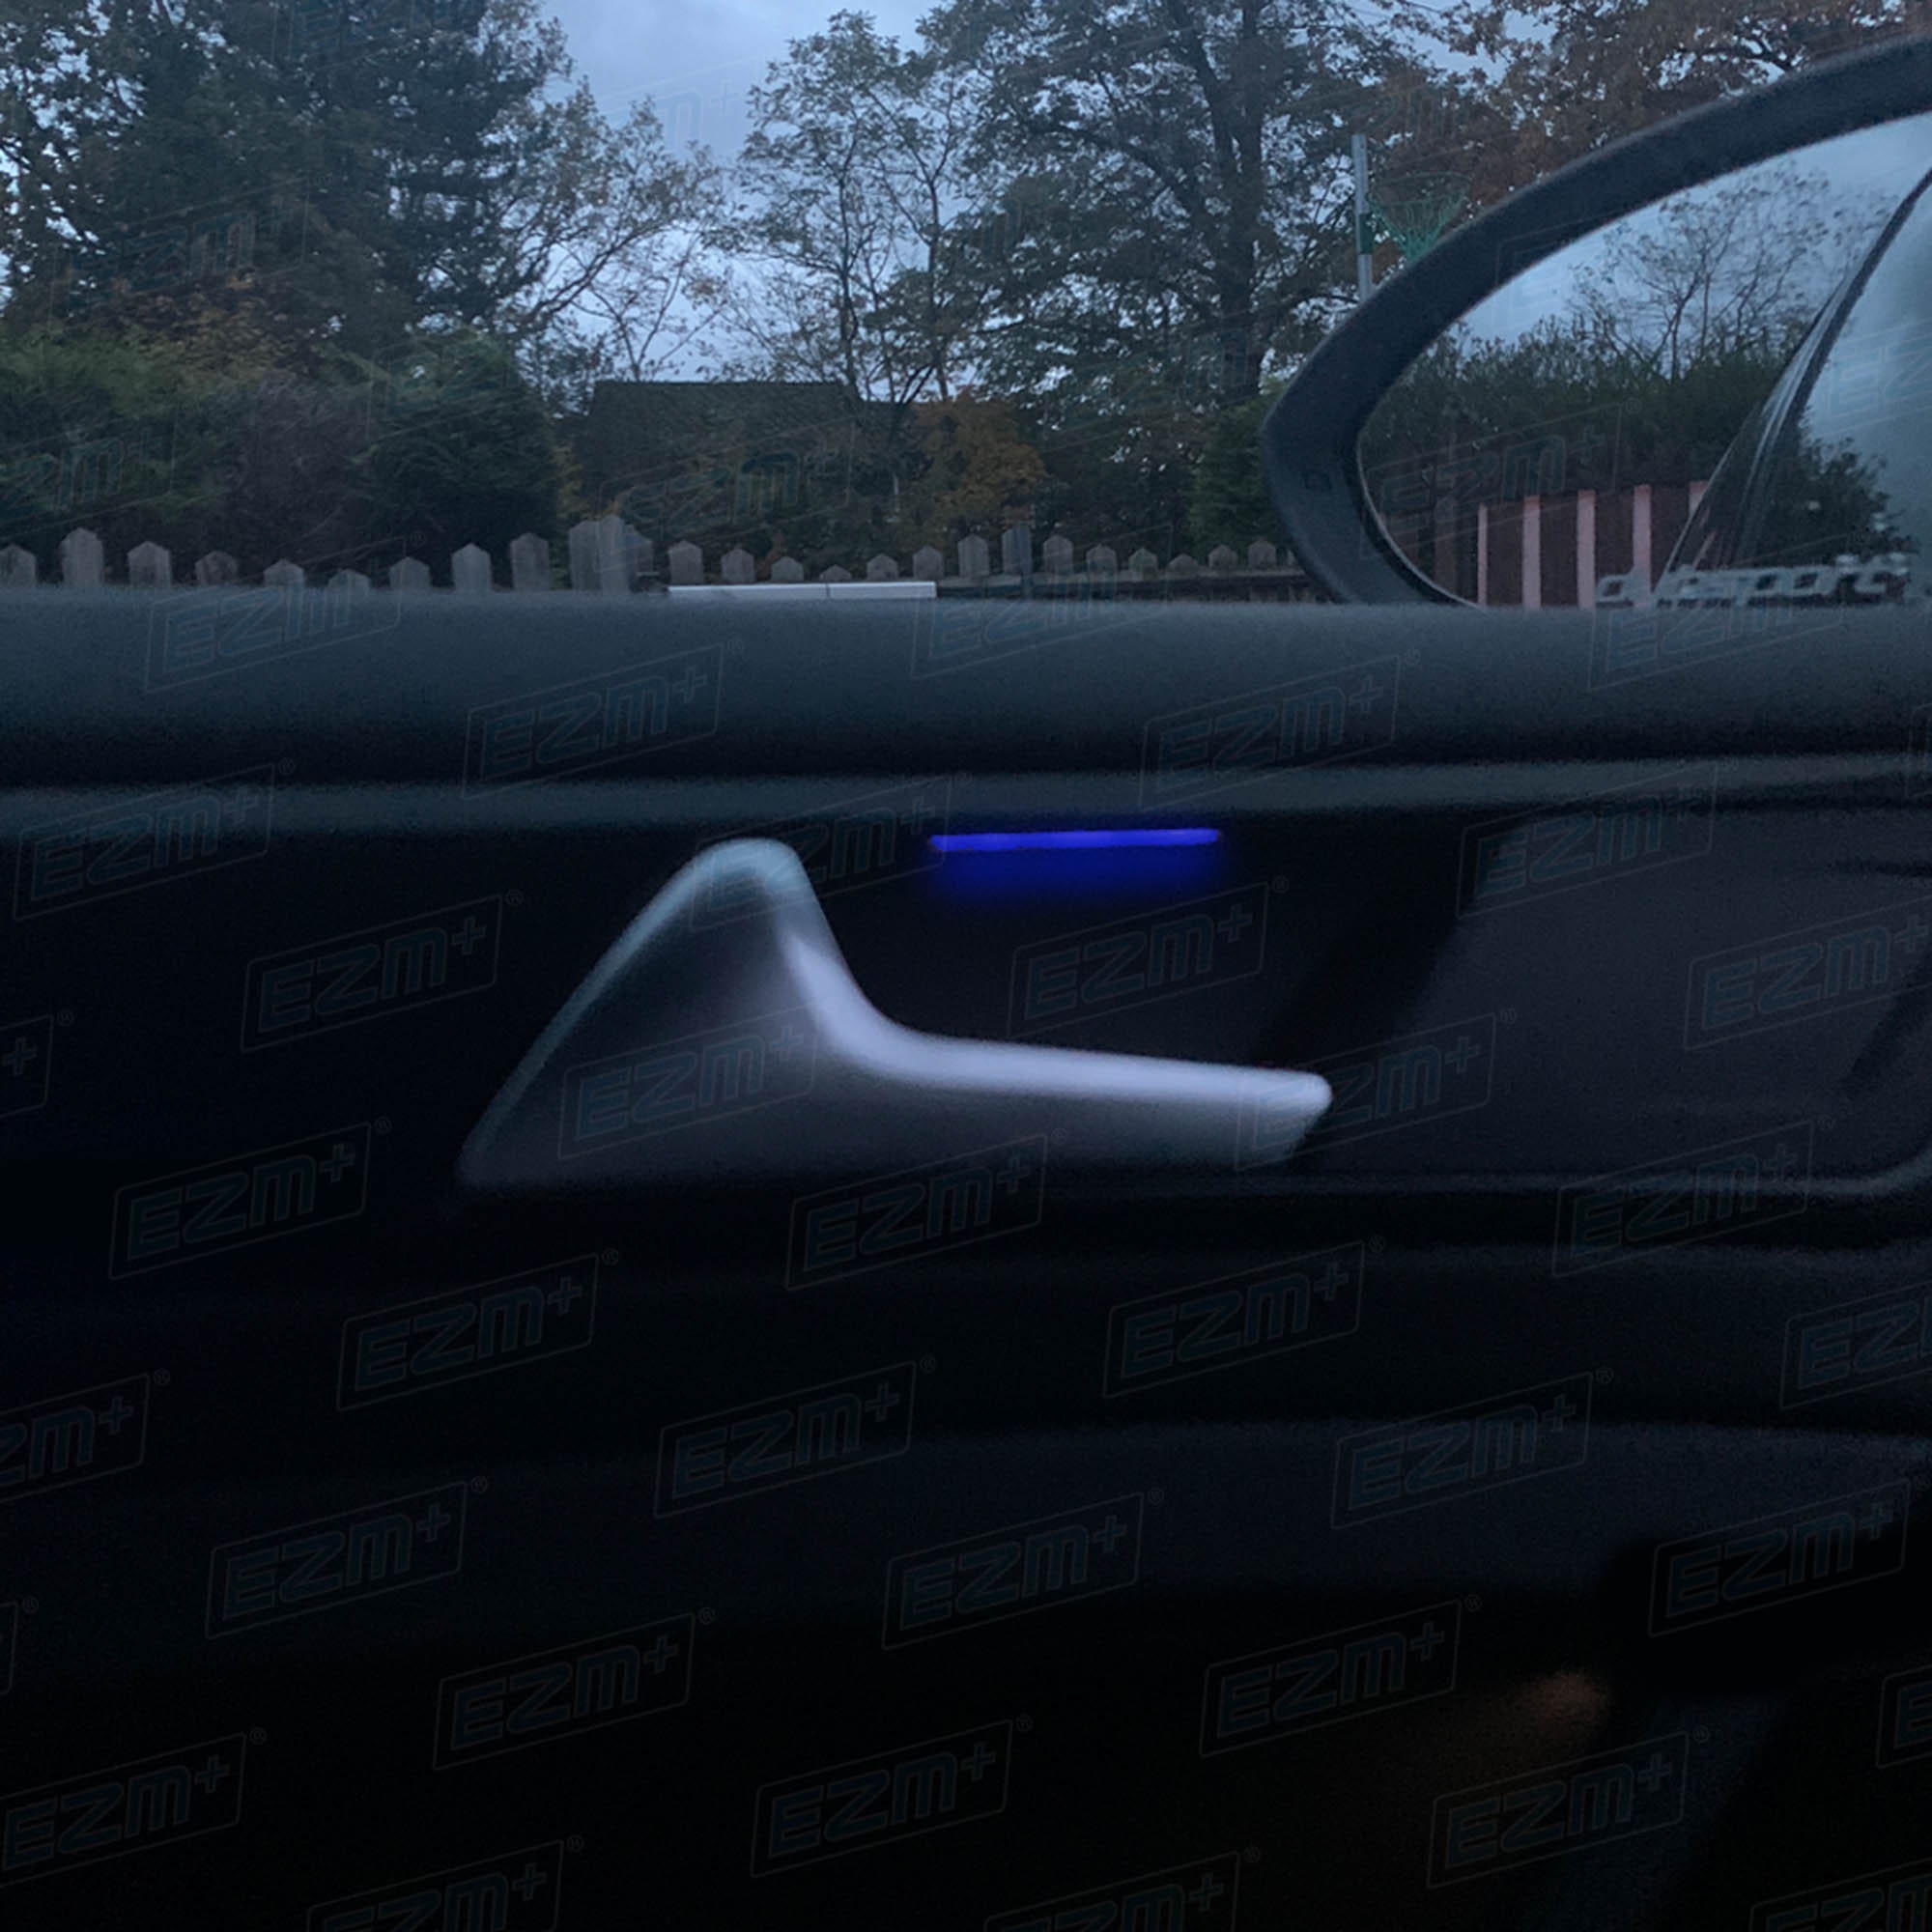 LED Auto Tür Courtesy Laser Logo Projektor Lichter Für Volkswagen VW Caddy  Touran Golf 4 MK4 Käfer Bora3 Von 13,13 €